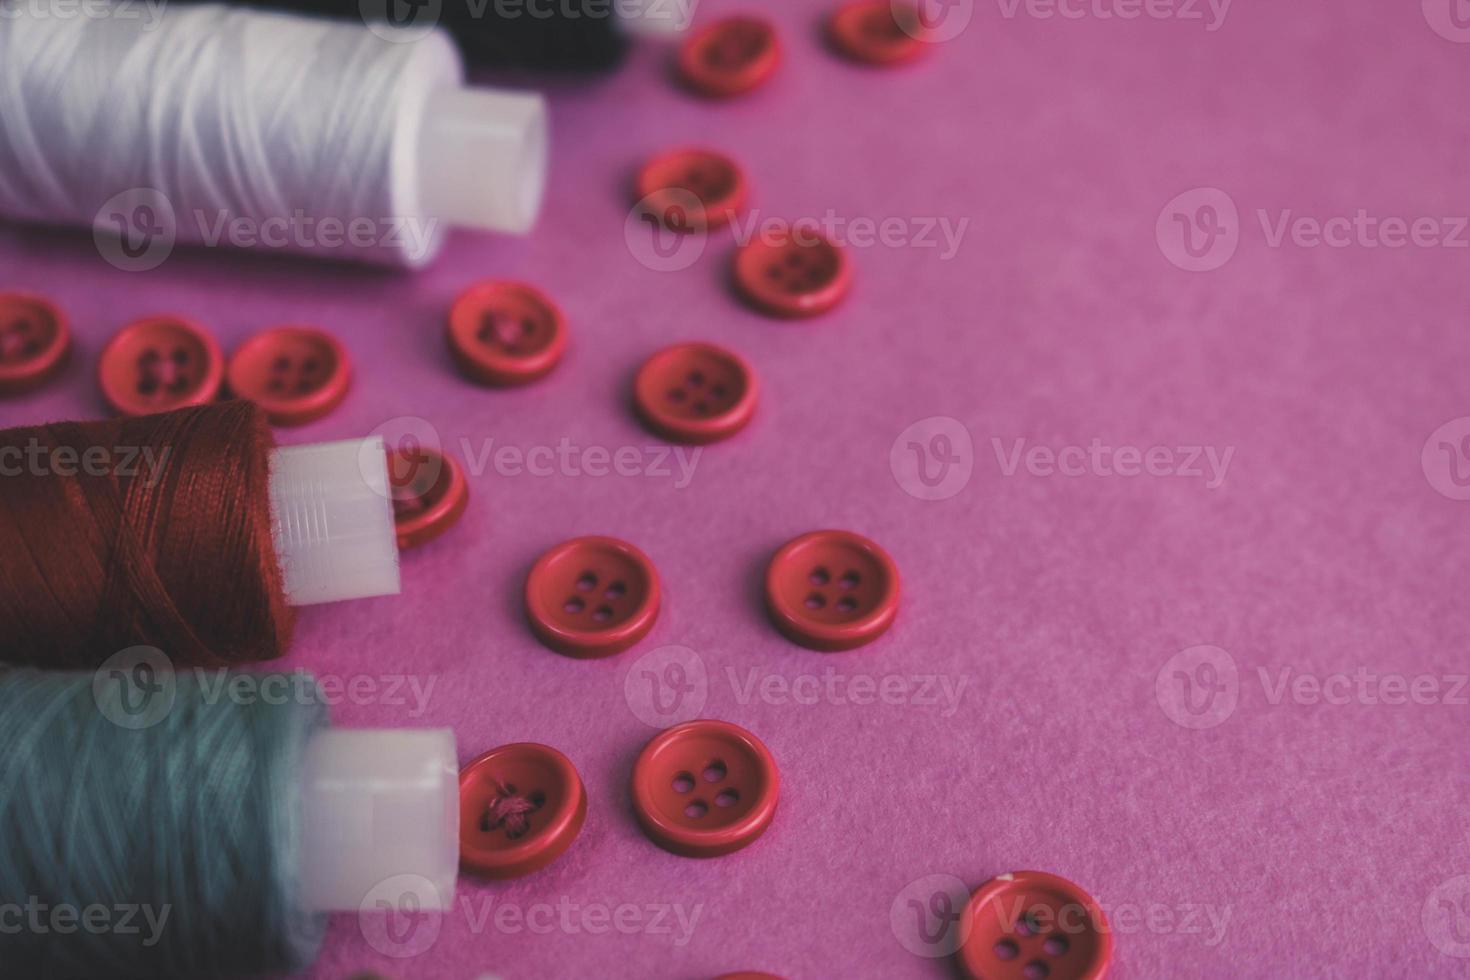 hermosa textura con muchos botones rojos redondos para coser, coser y madejas de carretes de hilo. copie el espacio endecha plana rosa, fondo morado foto